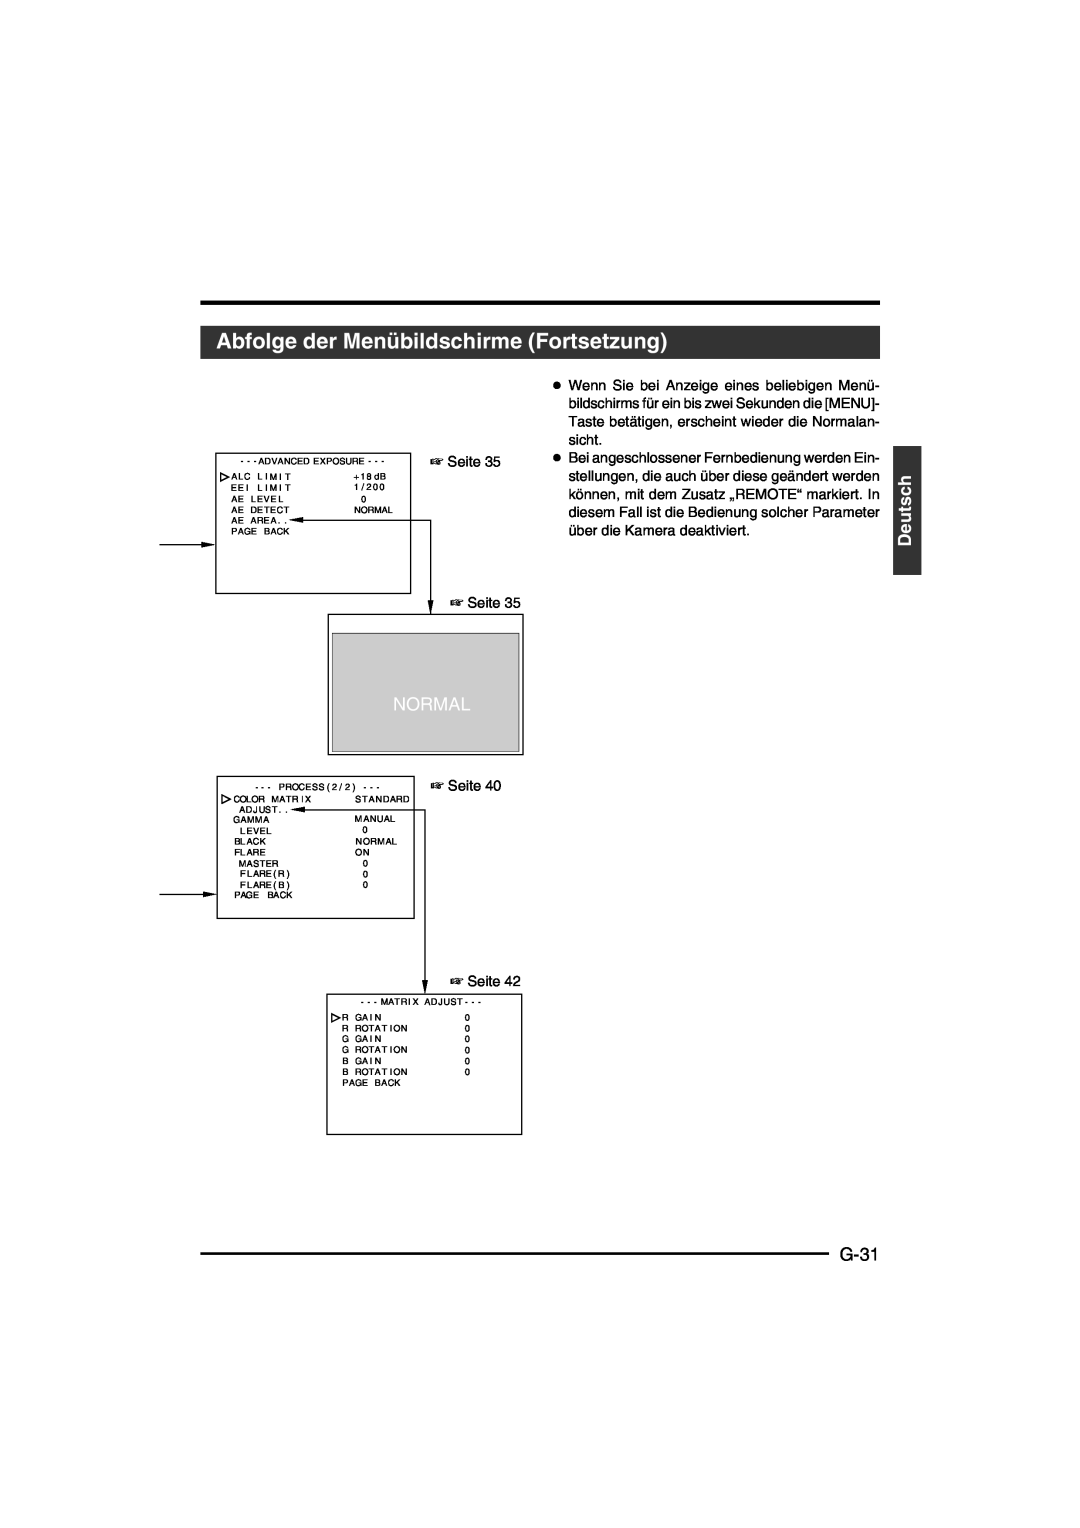 JVC KY-F550E instruction manual Abfolge der Menübildschirme Fortsetzung, G-31, Deutsch, Normal 